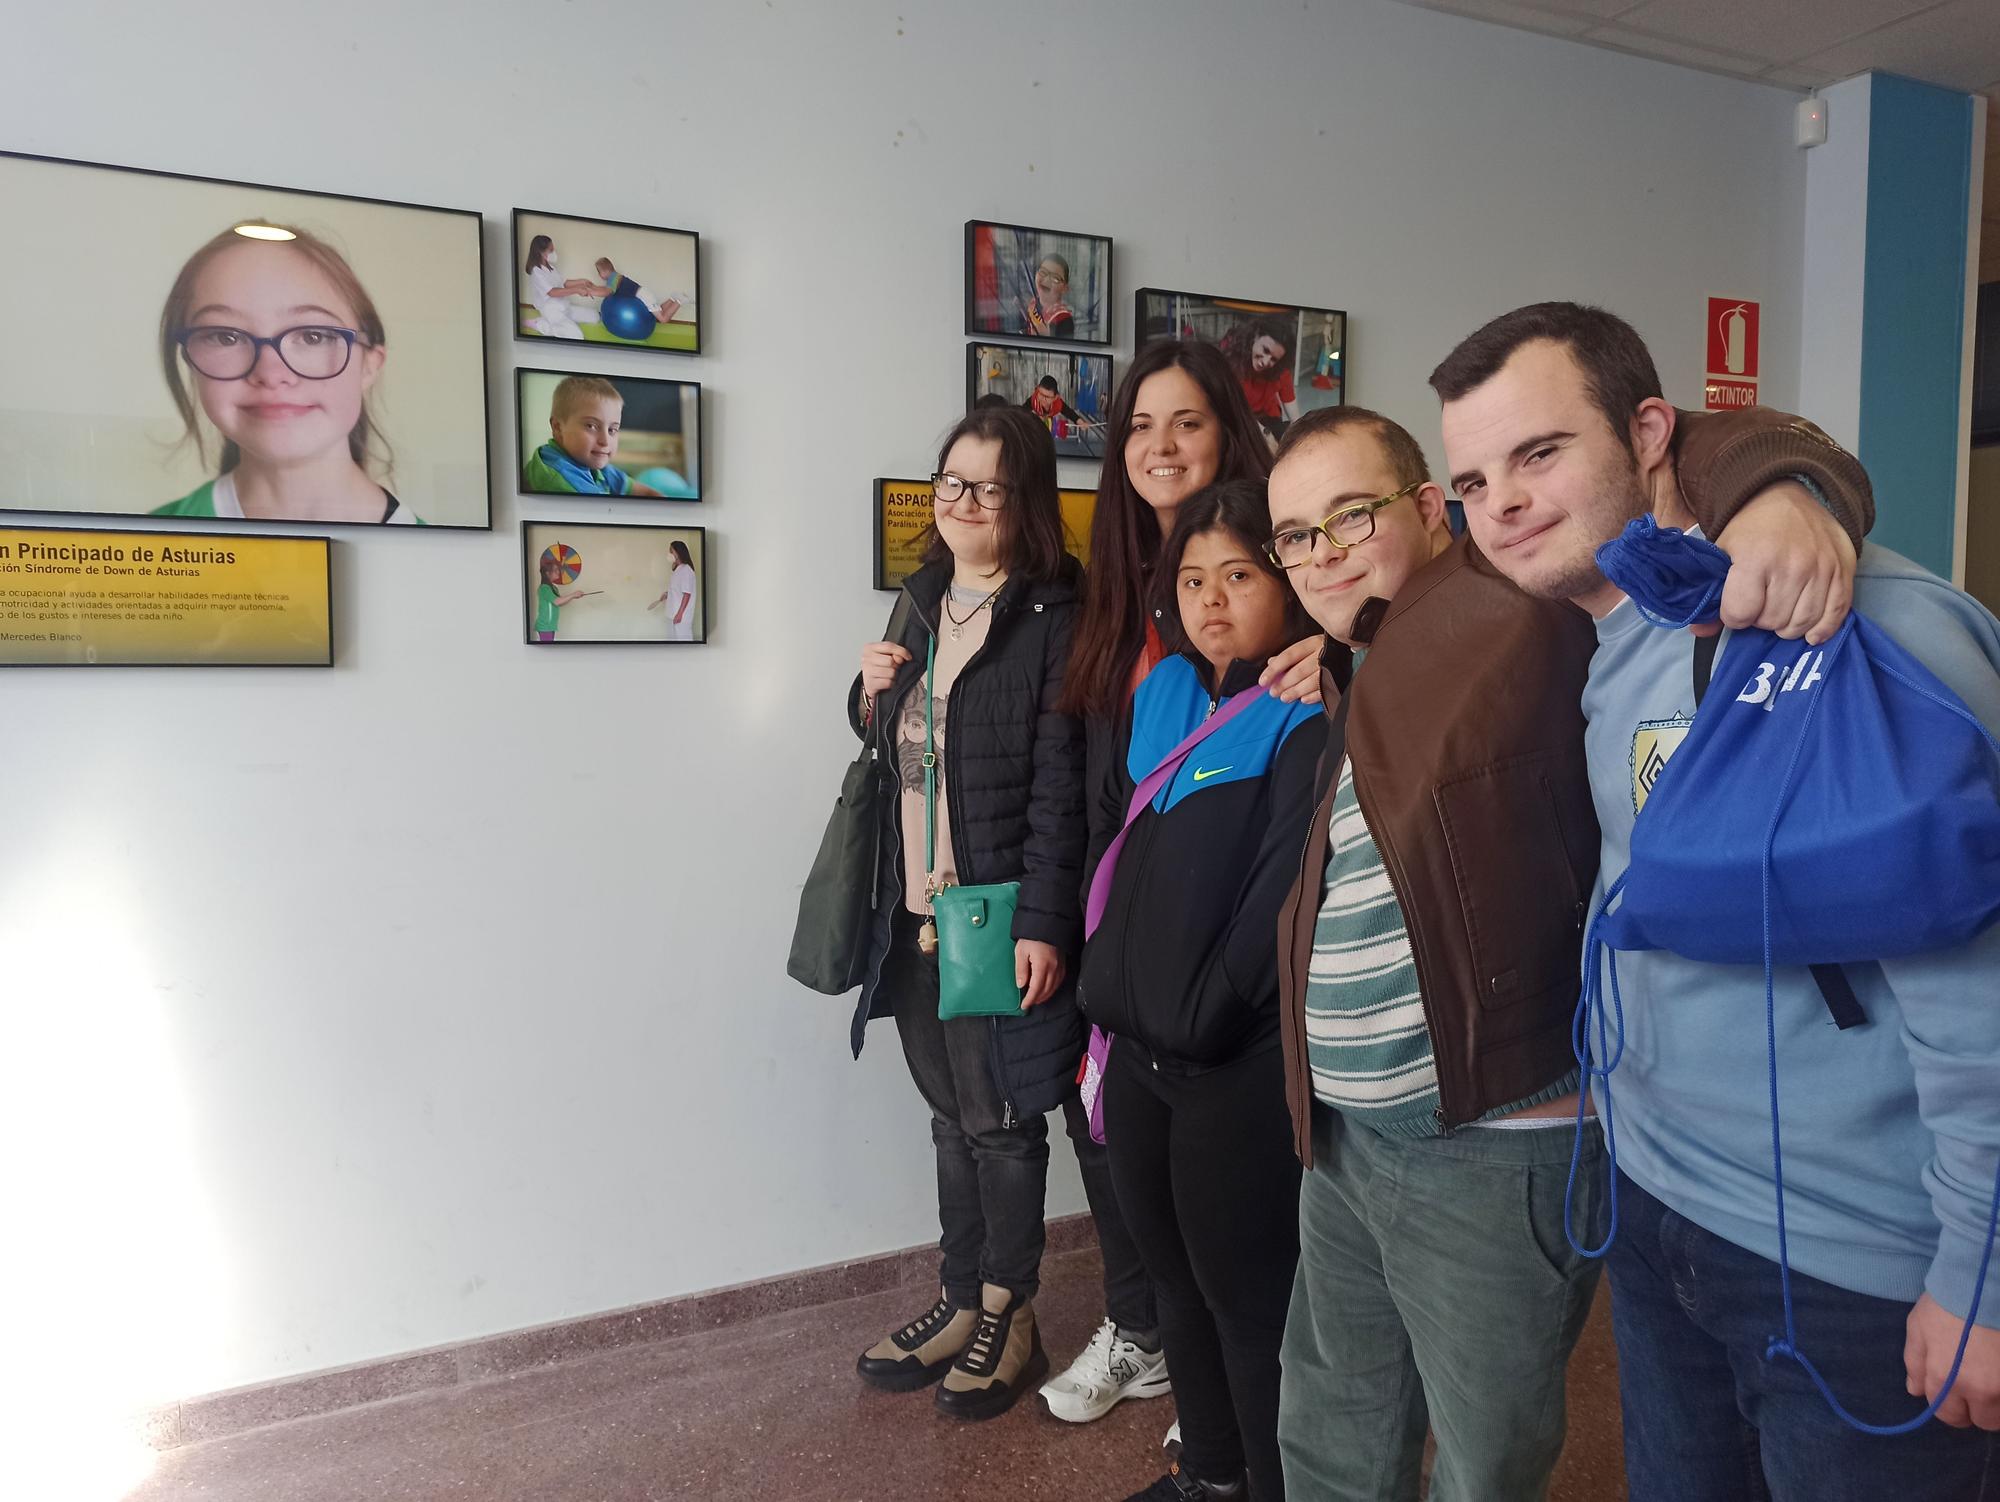 La exposición "Nuestros vecinos invisibles" sorprende a los alumnos del instituto de Llanera: "Es inspiradora"